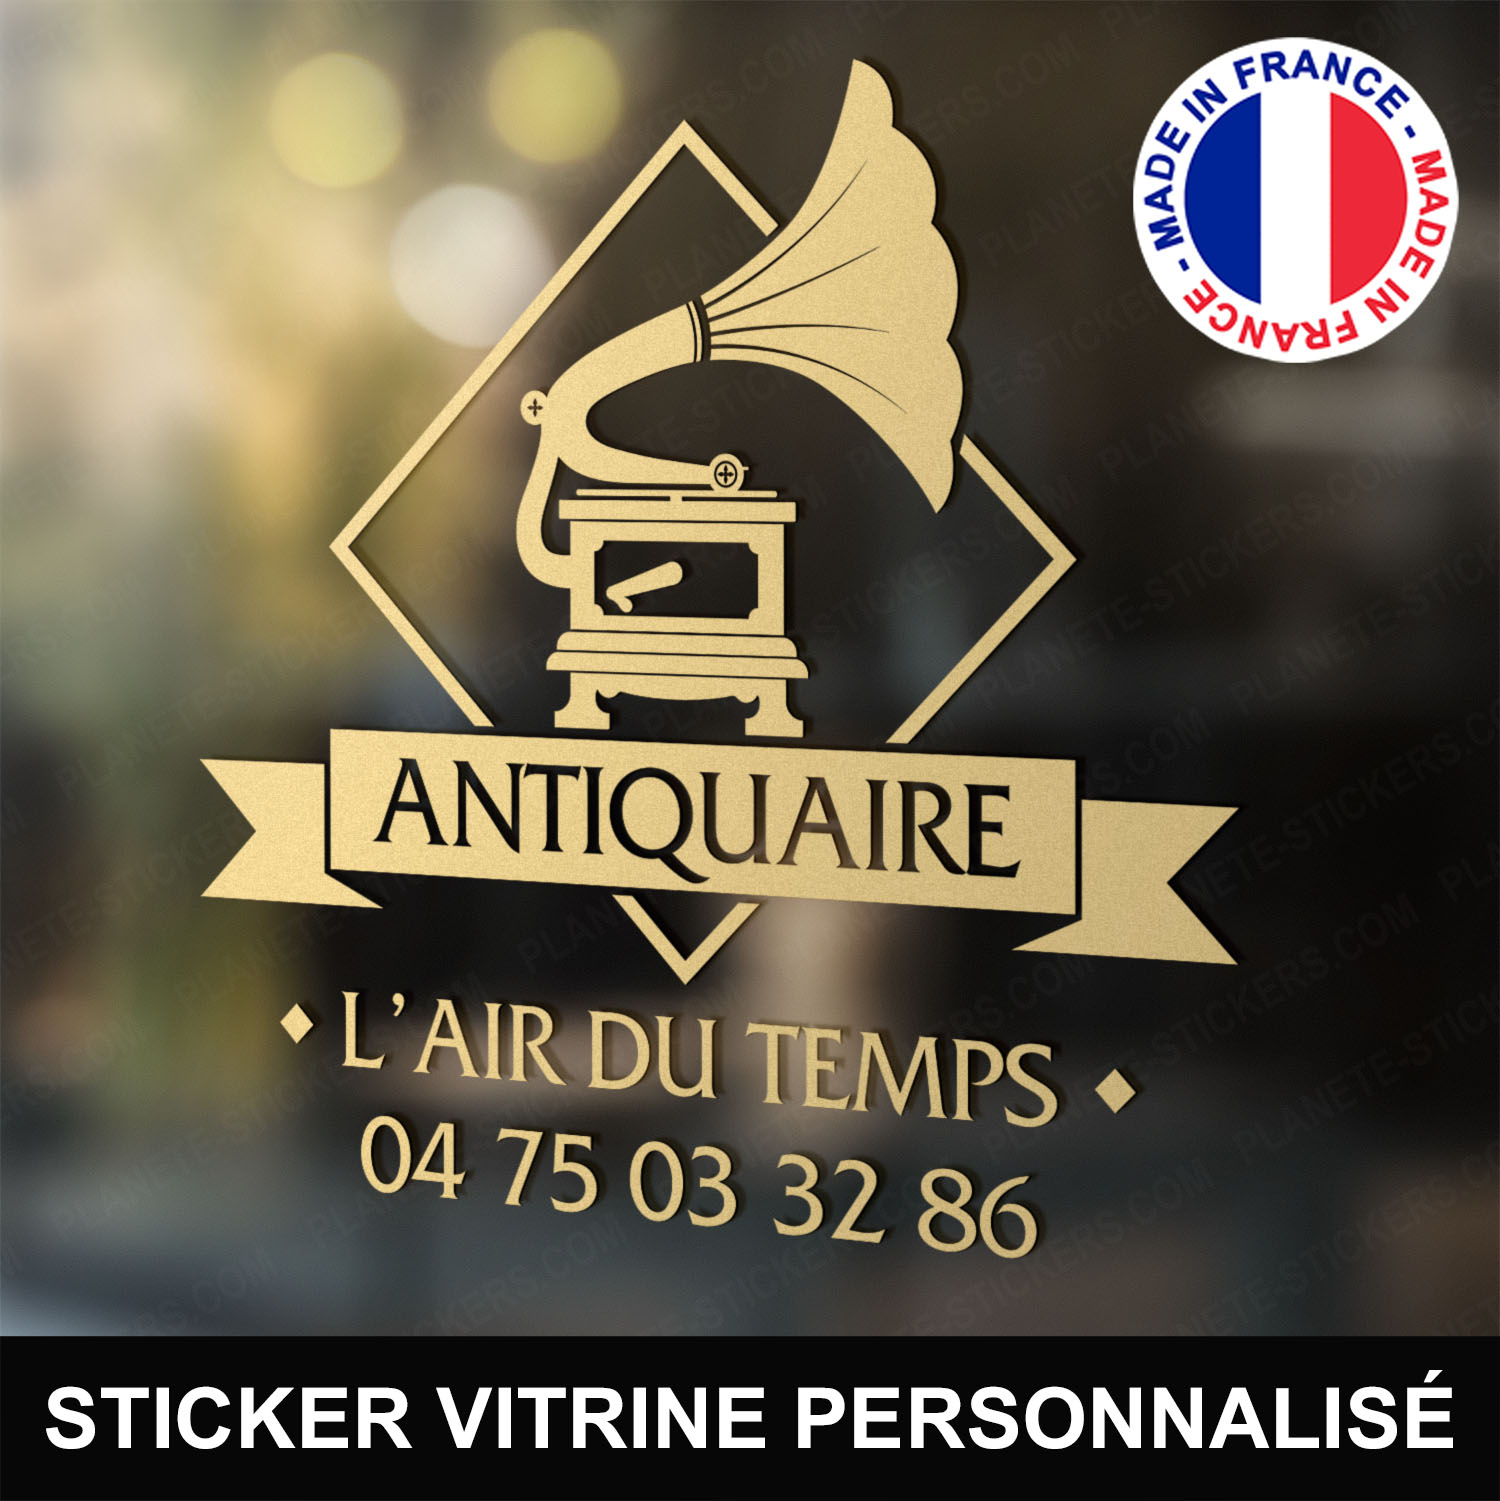 ref1antiquairevitrine-stickers-antiquaire-vitrine-sticker-personnalisé-autocollant-antiquité-vitrophanie-vitre-professionnel-logo-gramophone-tourne-disque